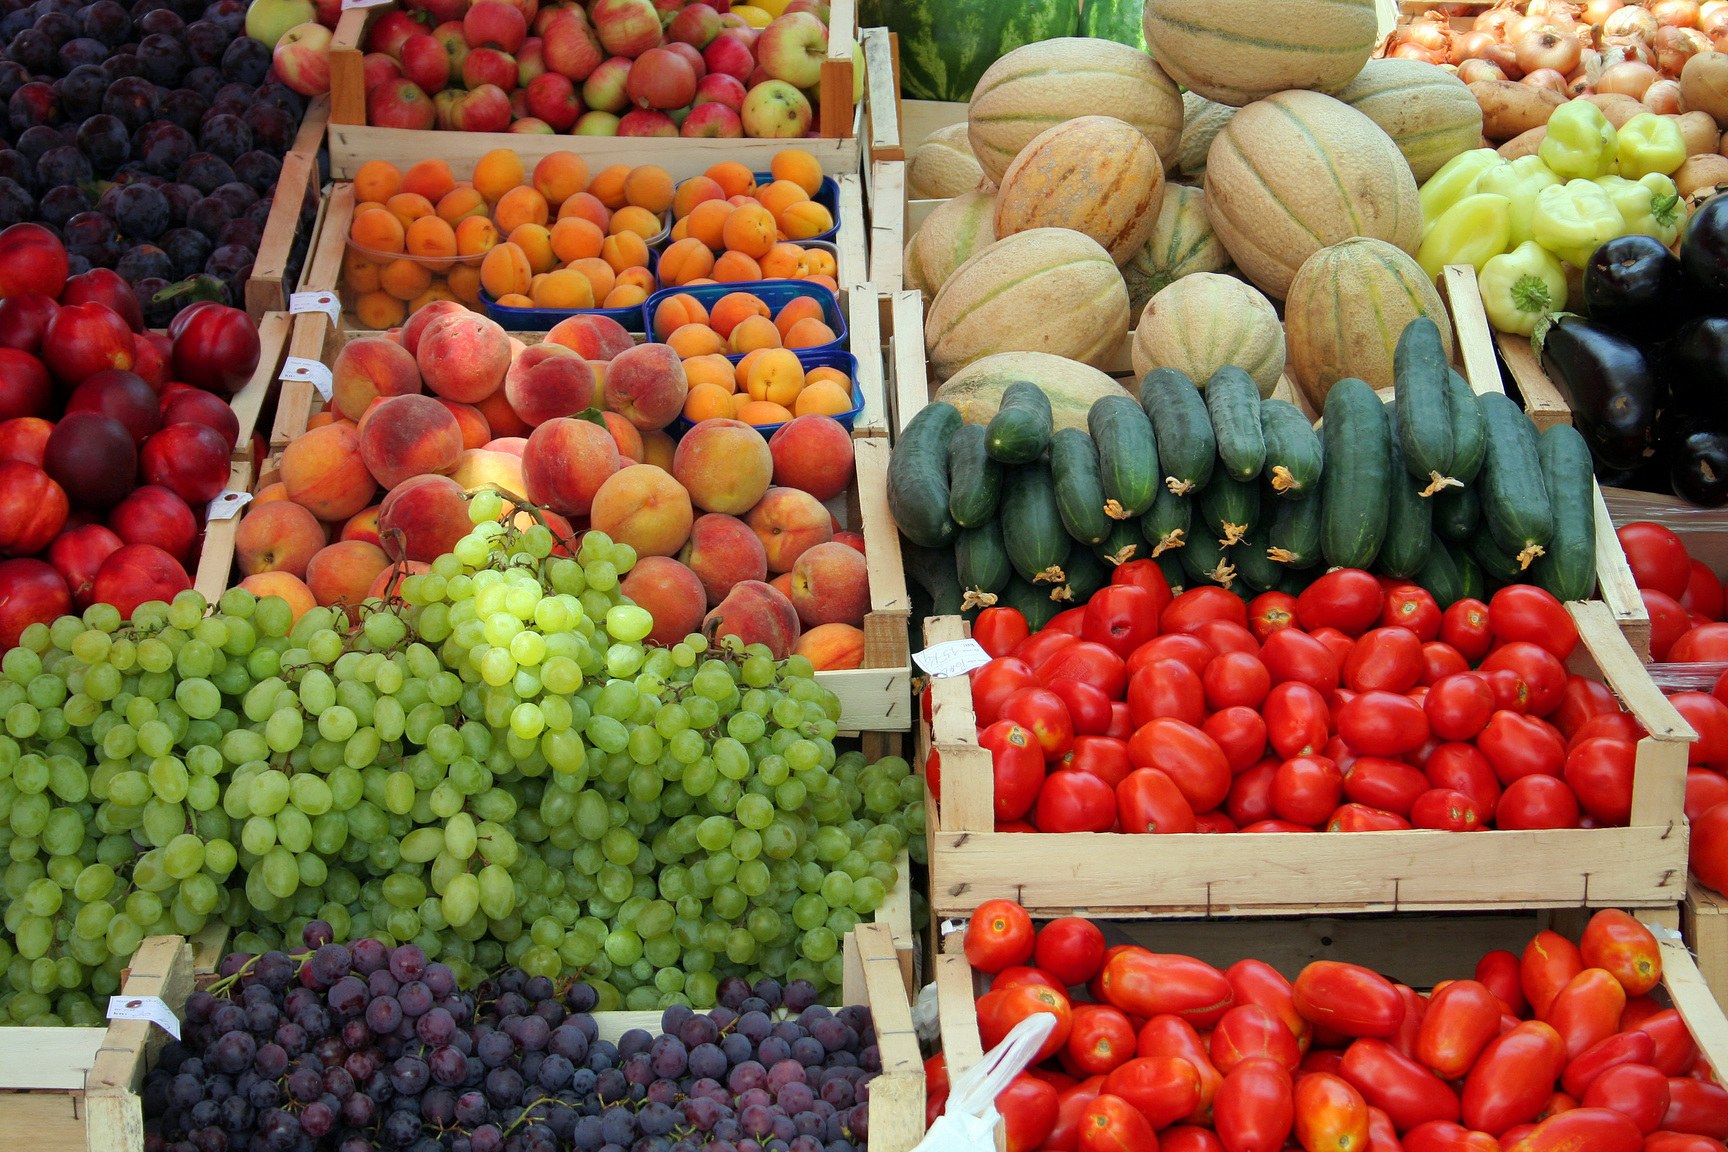 Сколько Узбекистан заработал на фруктах и овощах?